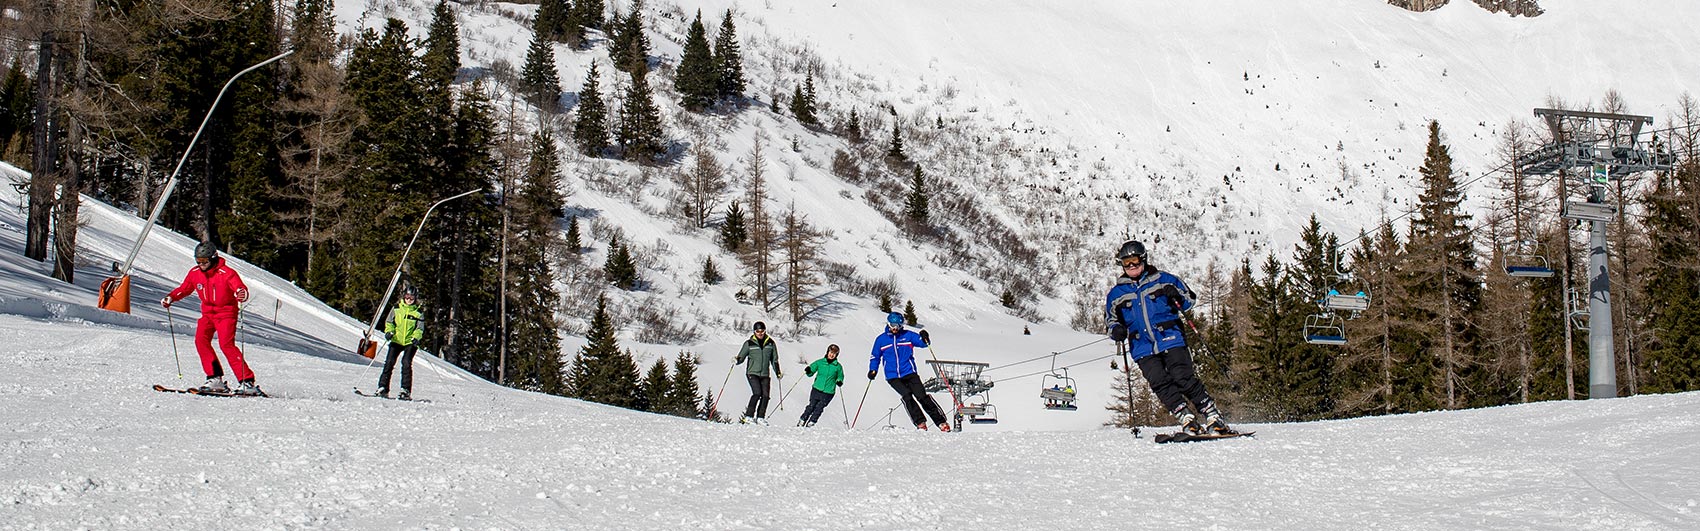 Skifahrer fahren die Piste hinunter